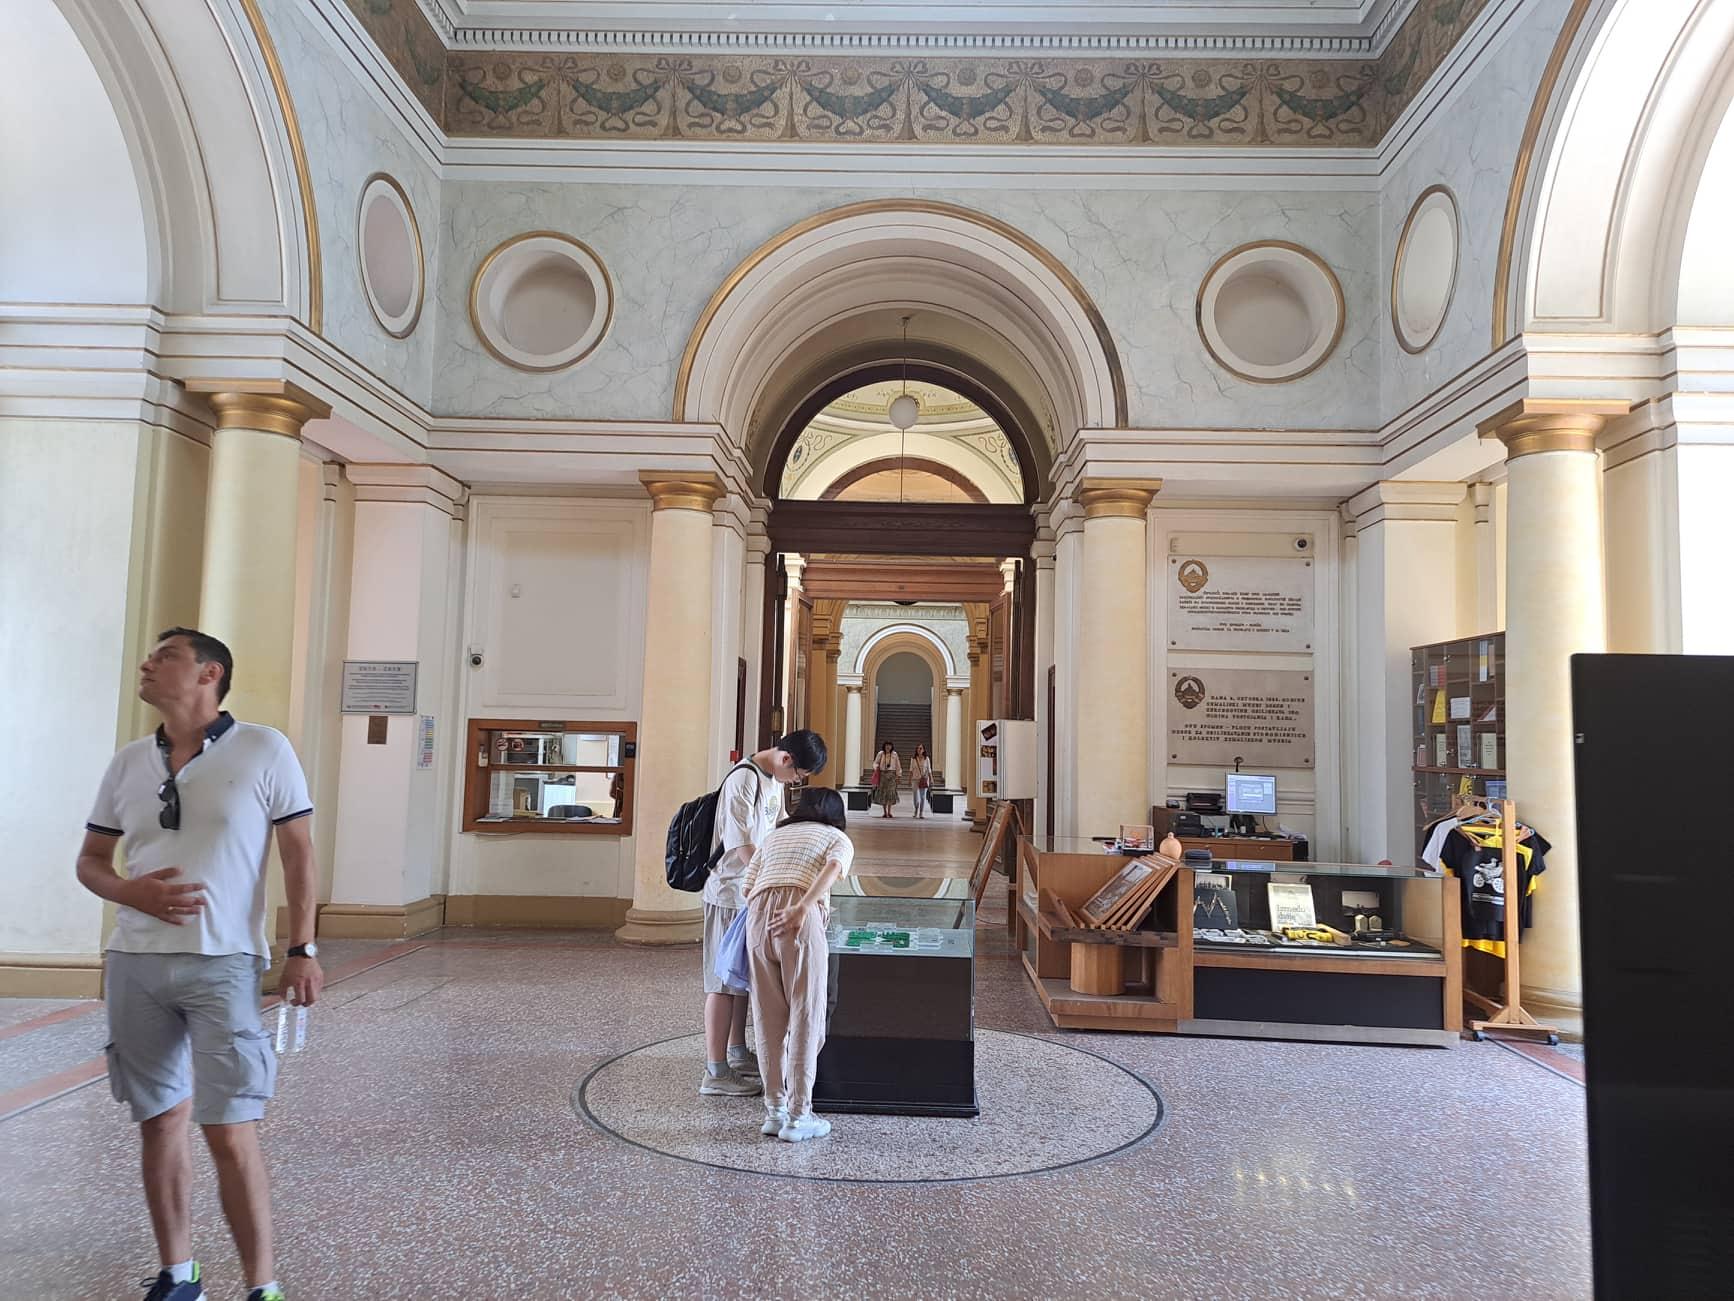 Porast broja gostiju pozitivno utjecao i na posjete ovoj kulturnoj ustanovi: Muzejsko blago privlači turiste